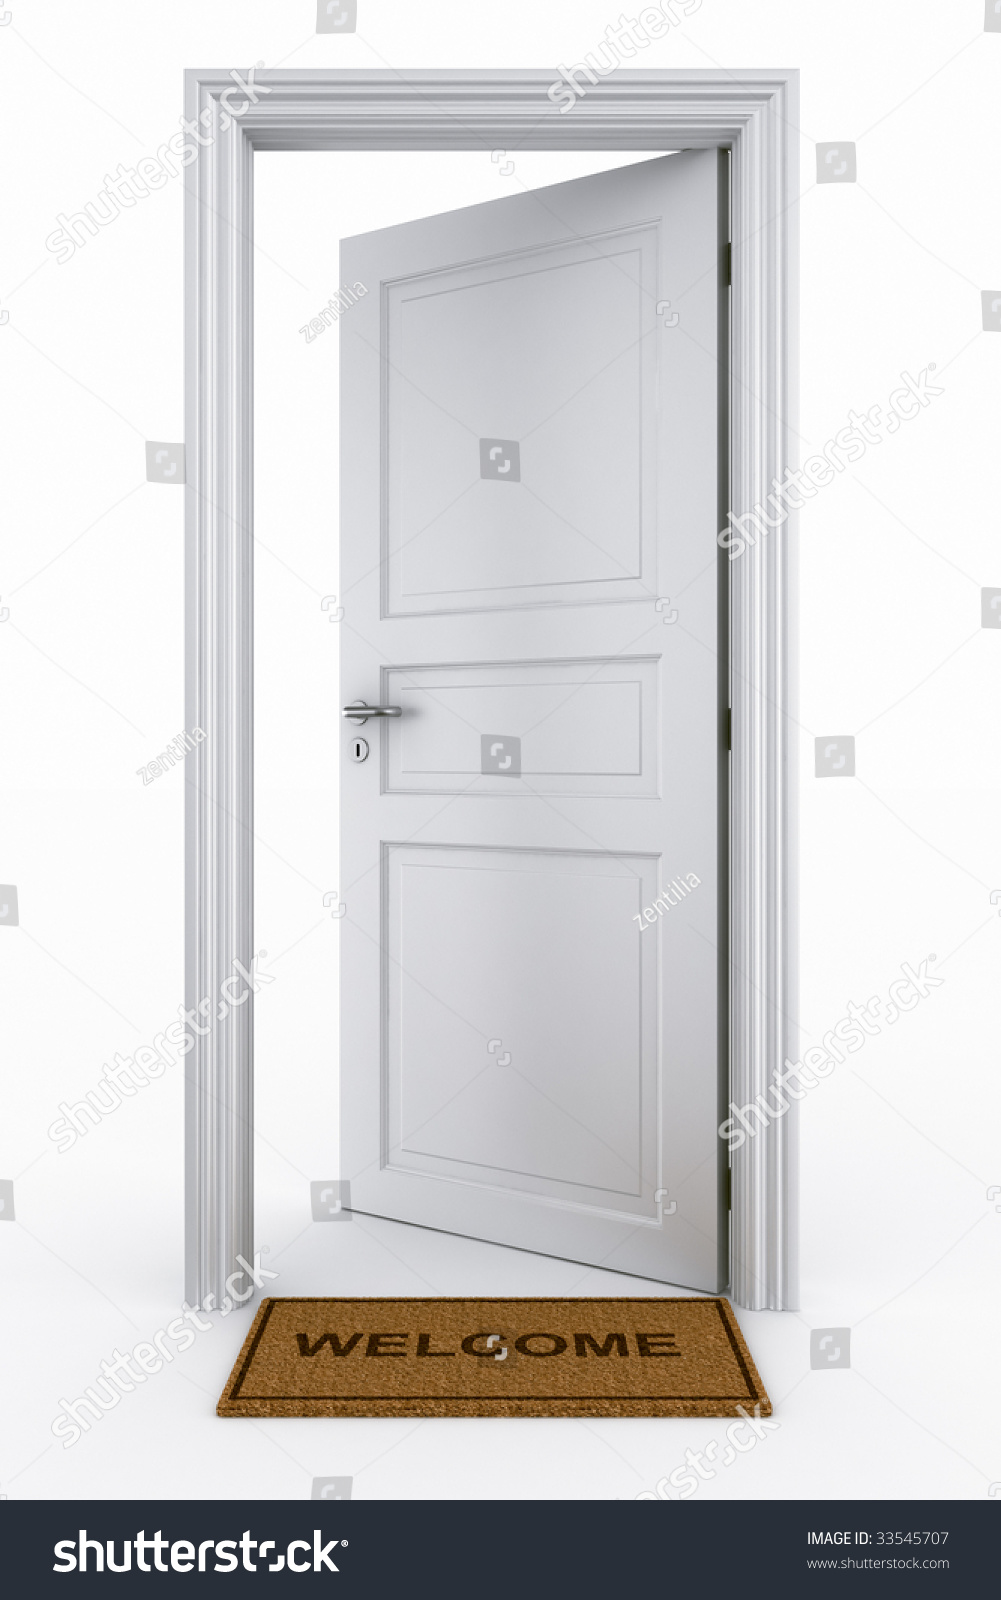 3d Rendering Of An Open Door With Welcome Mat Stock Photo ...
